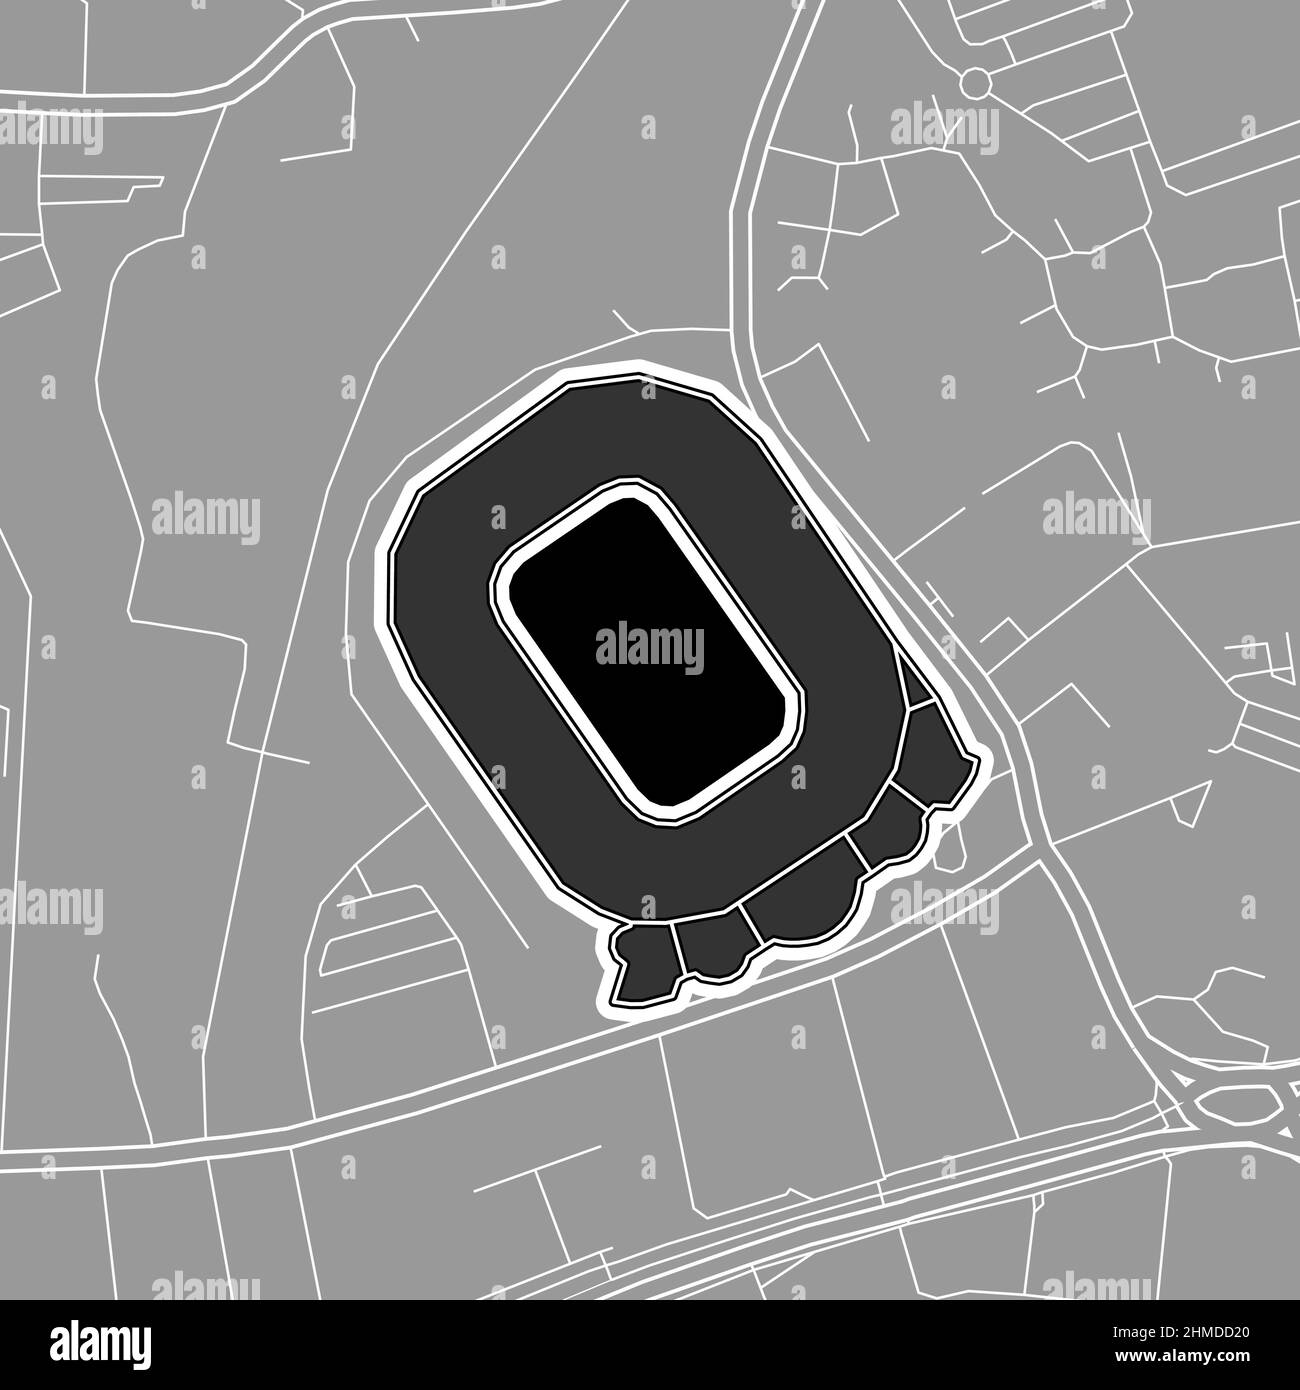 Londra, Baseball MLB Stadium, mappa vettoriale. La mappa dello stadio di baseball è stata disegnata con aree bianche e linee per le strade principali, le strade laterali. Illustrazione Vettoriale